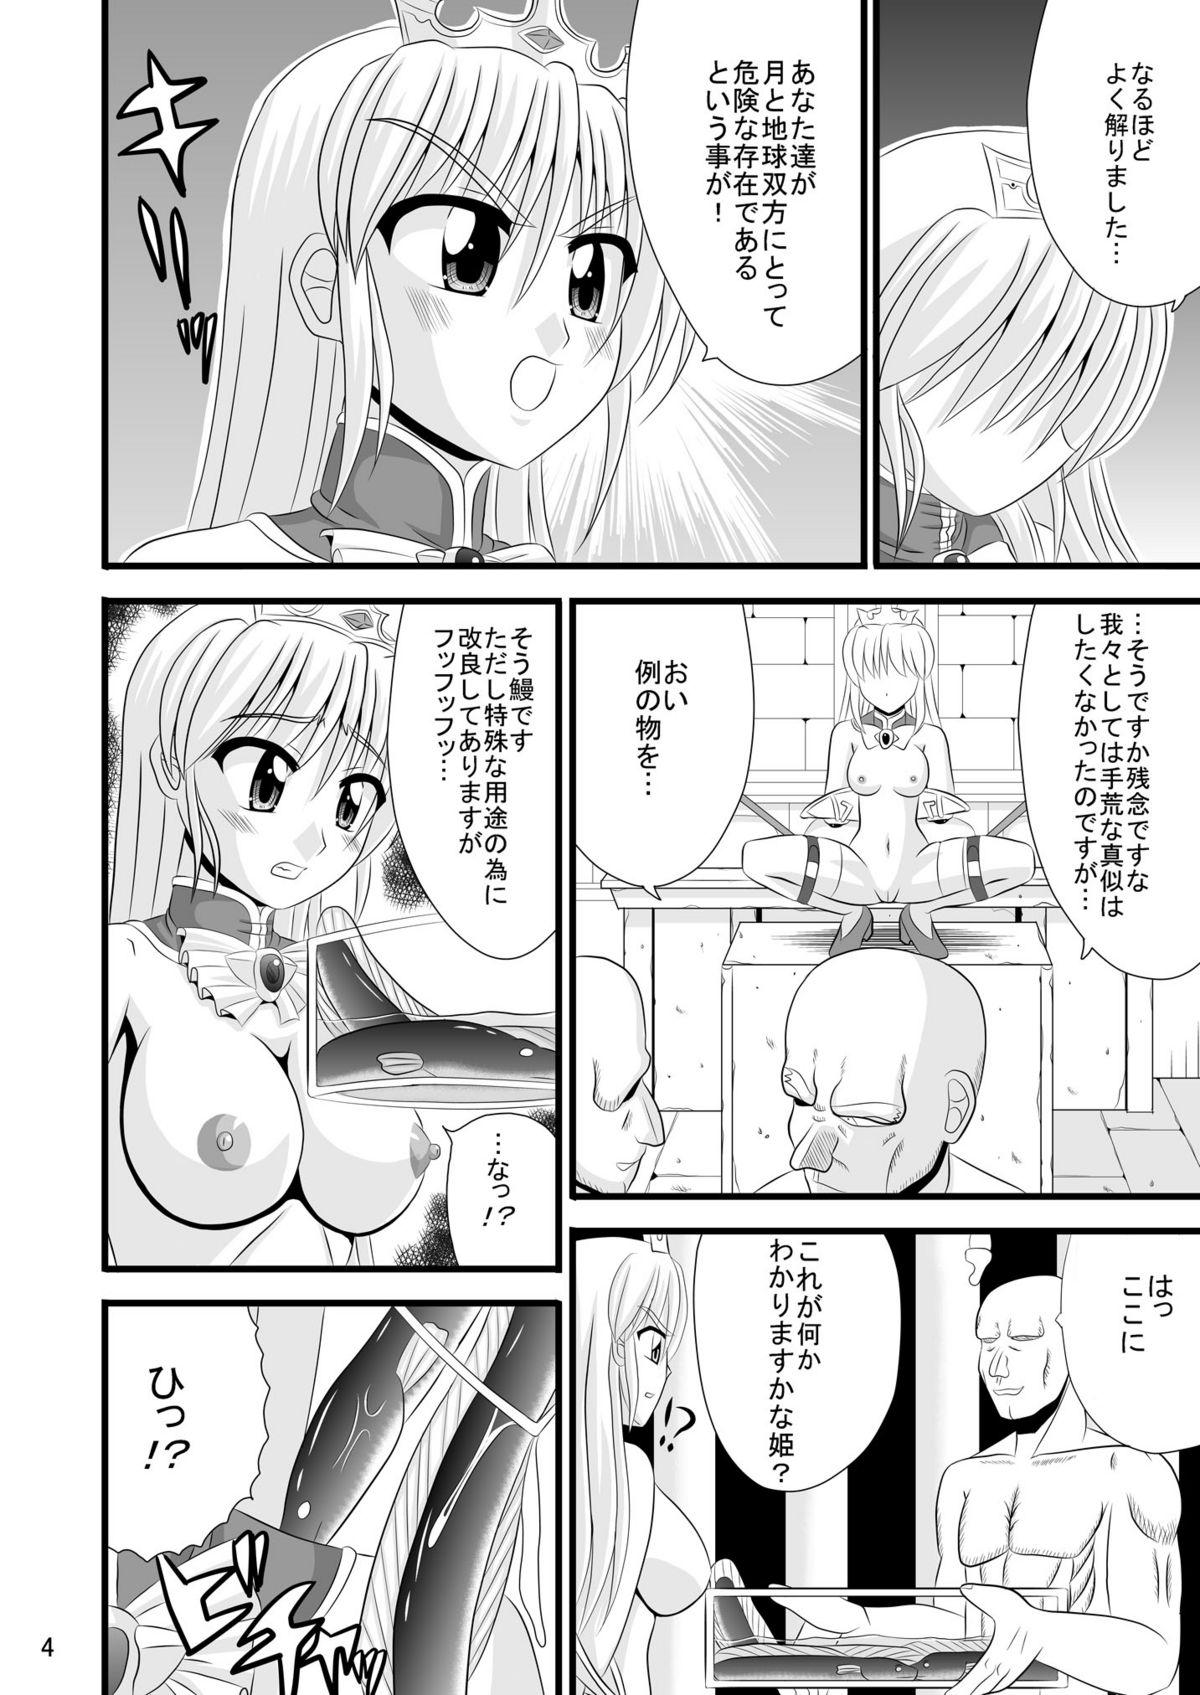 Ass To Mouth Chijoku no Saidan - Yoake mae yori ruriiro na Retro - Page 4